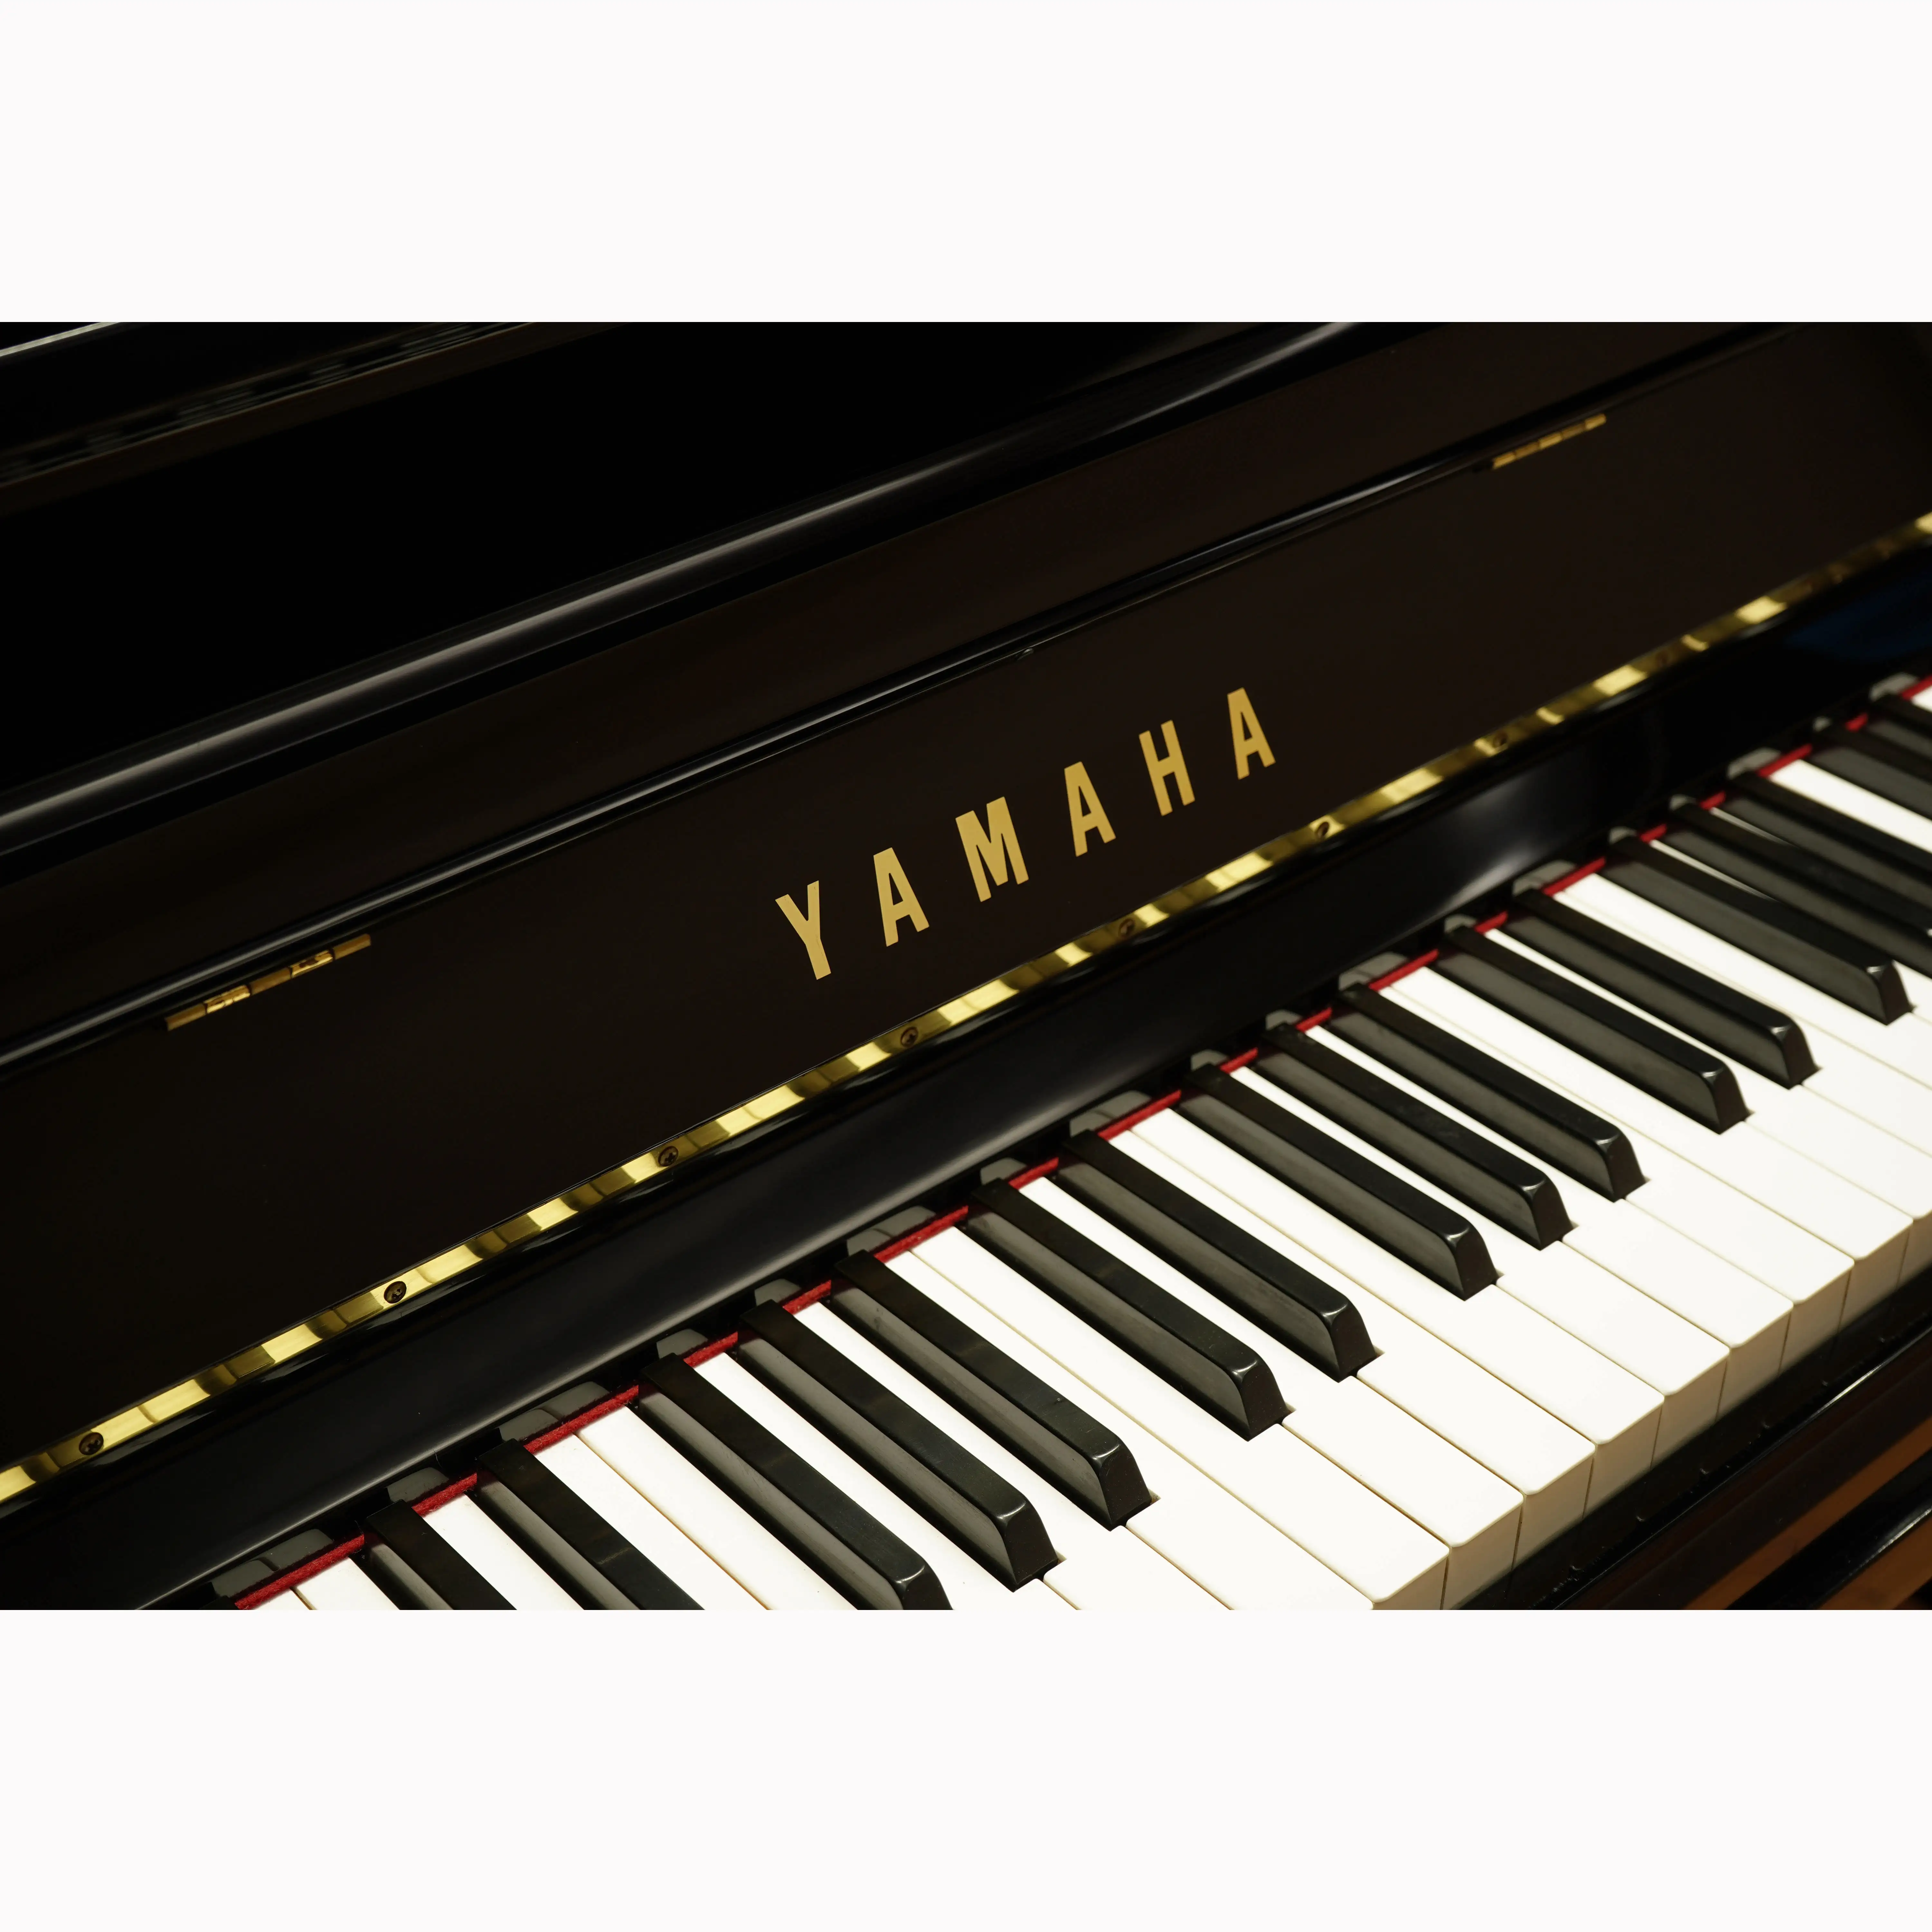 High quality used upright supply instrumentos musicais pianos